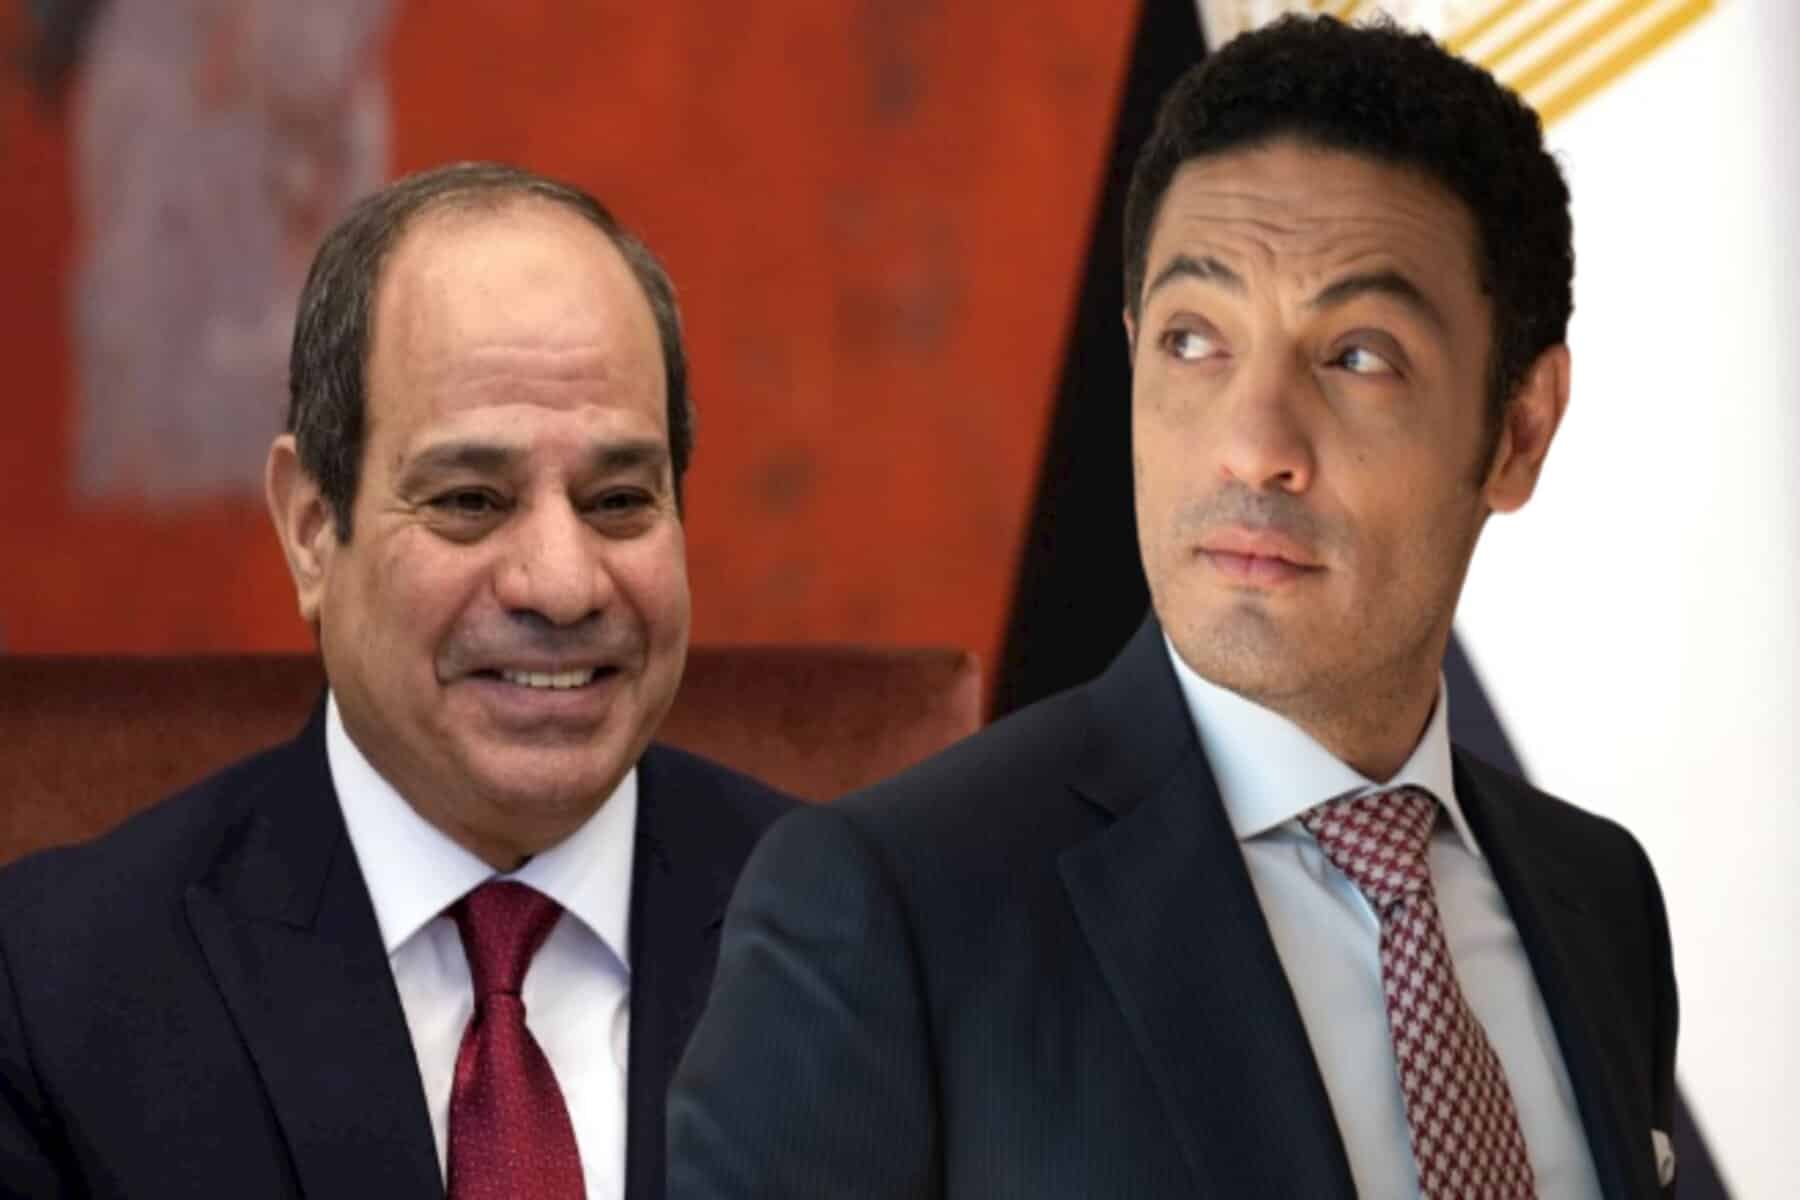 مصر ودعوة 11 نوفمبر alarabtrend.com